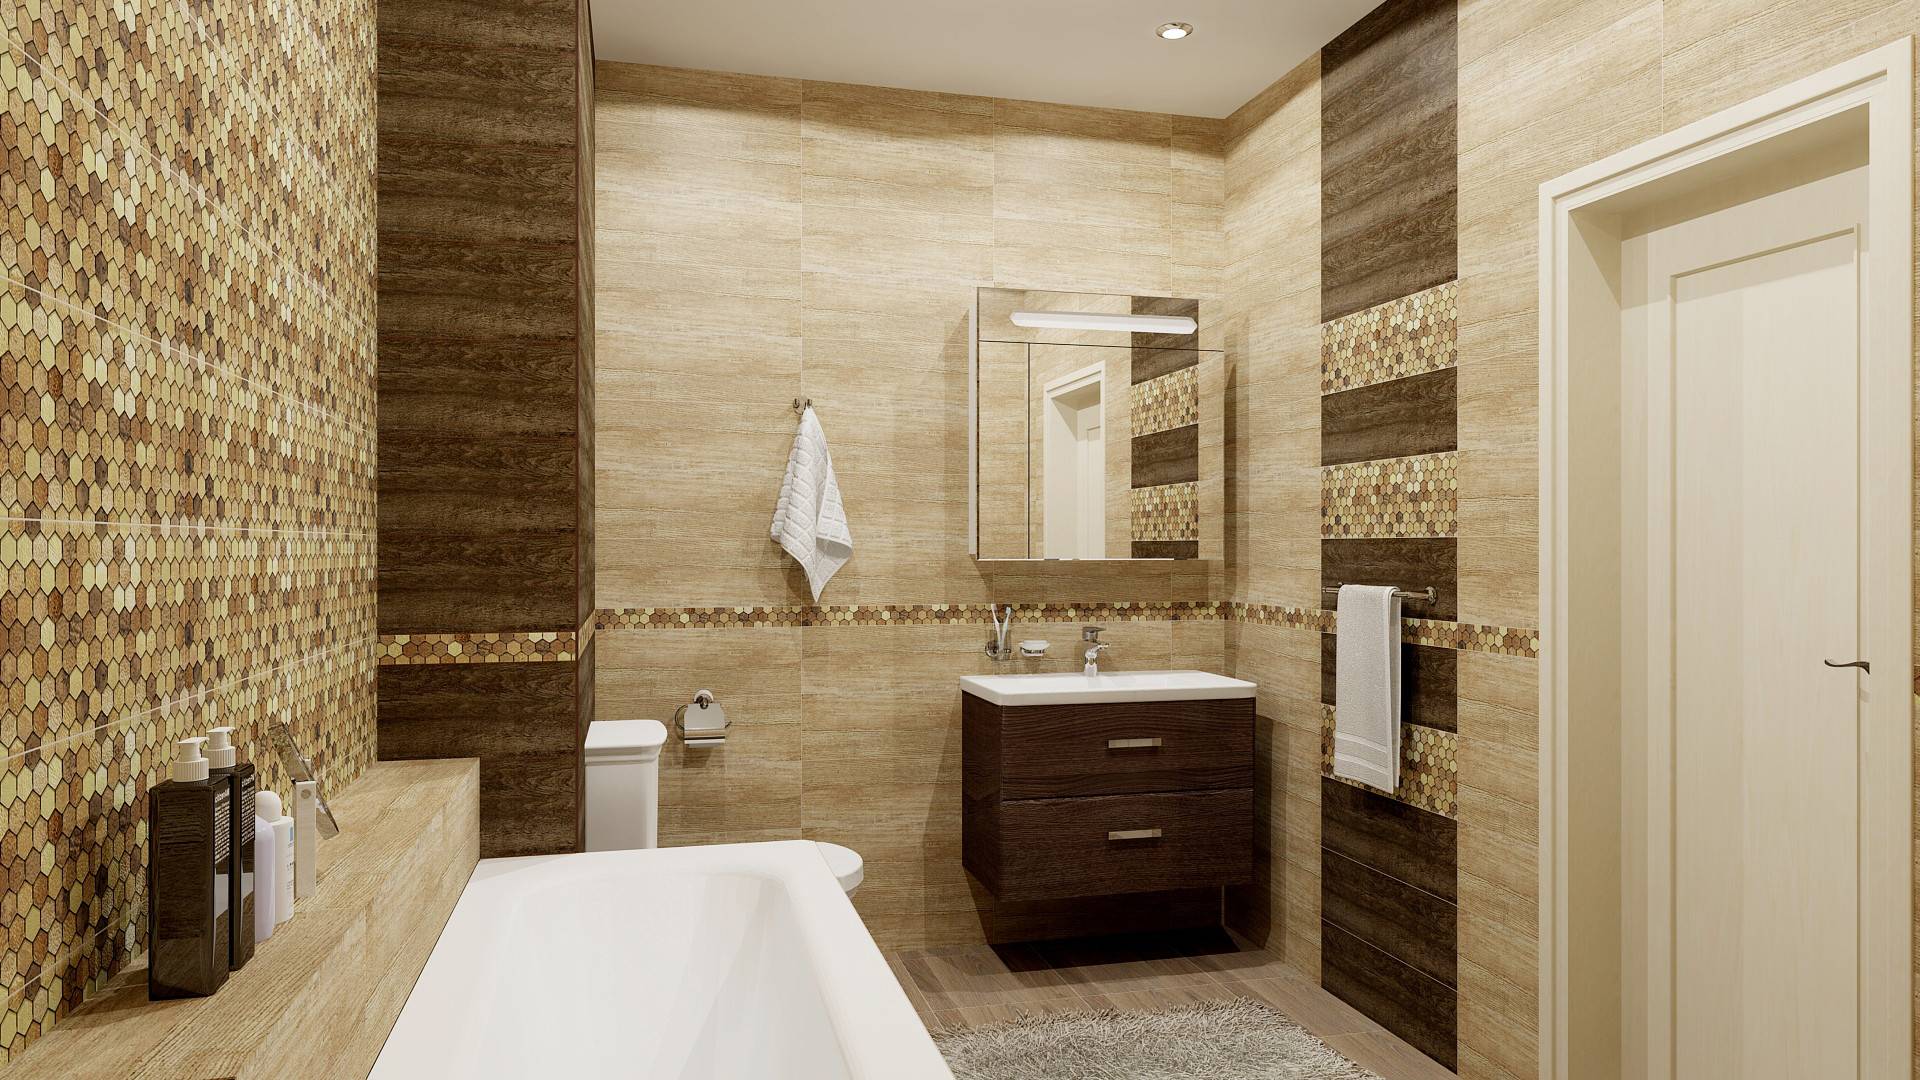 Современная ванная комната 2021-2022 - 7 идей в соответствии с трендами! | дизайн и интерьер ванной комнаты